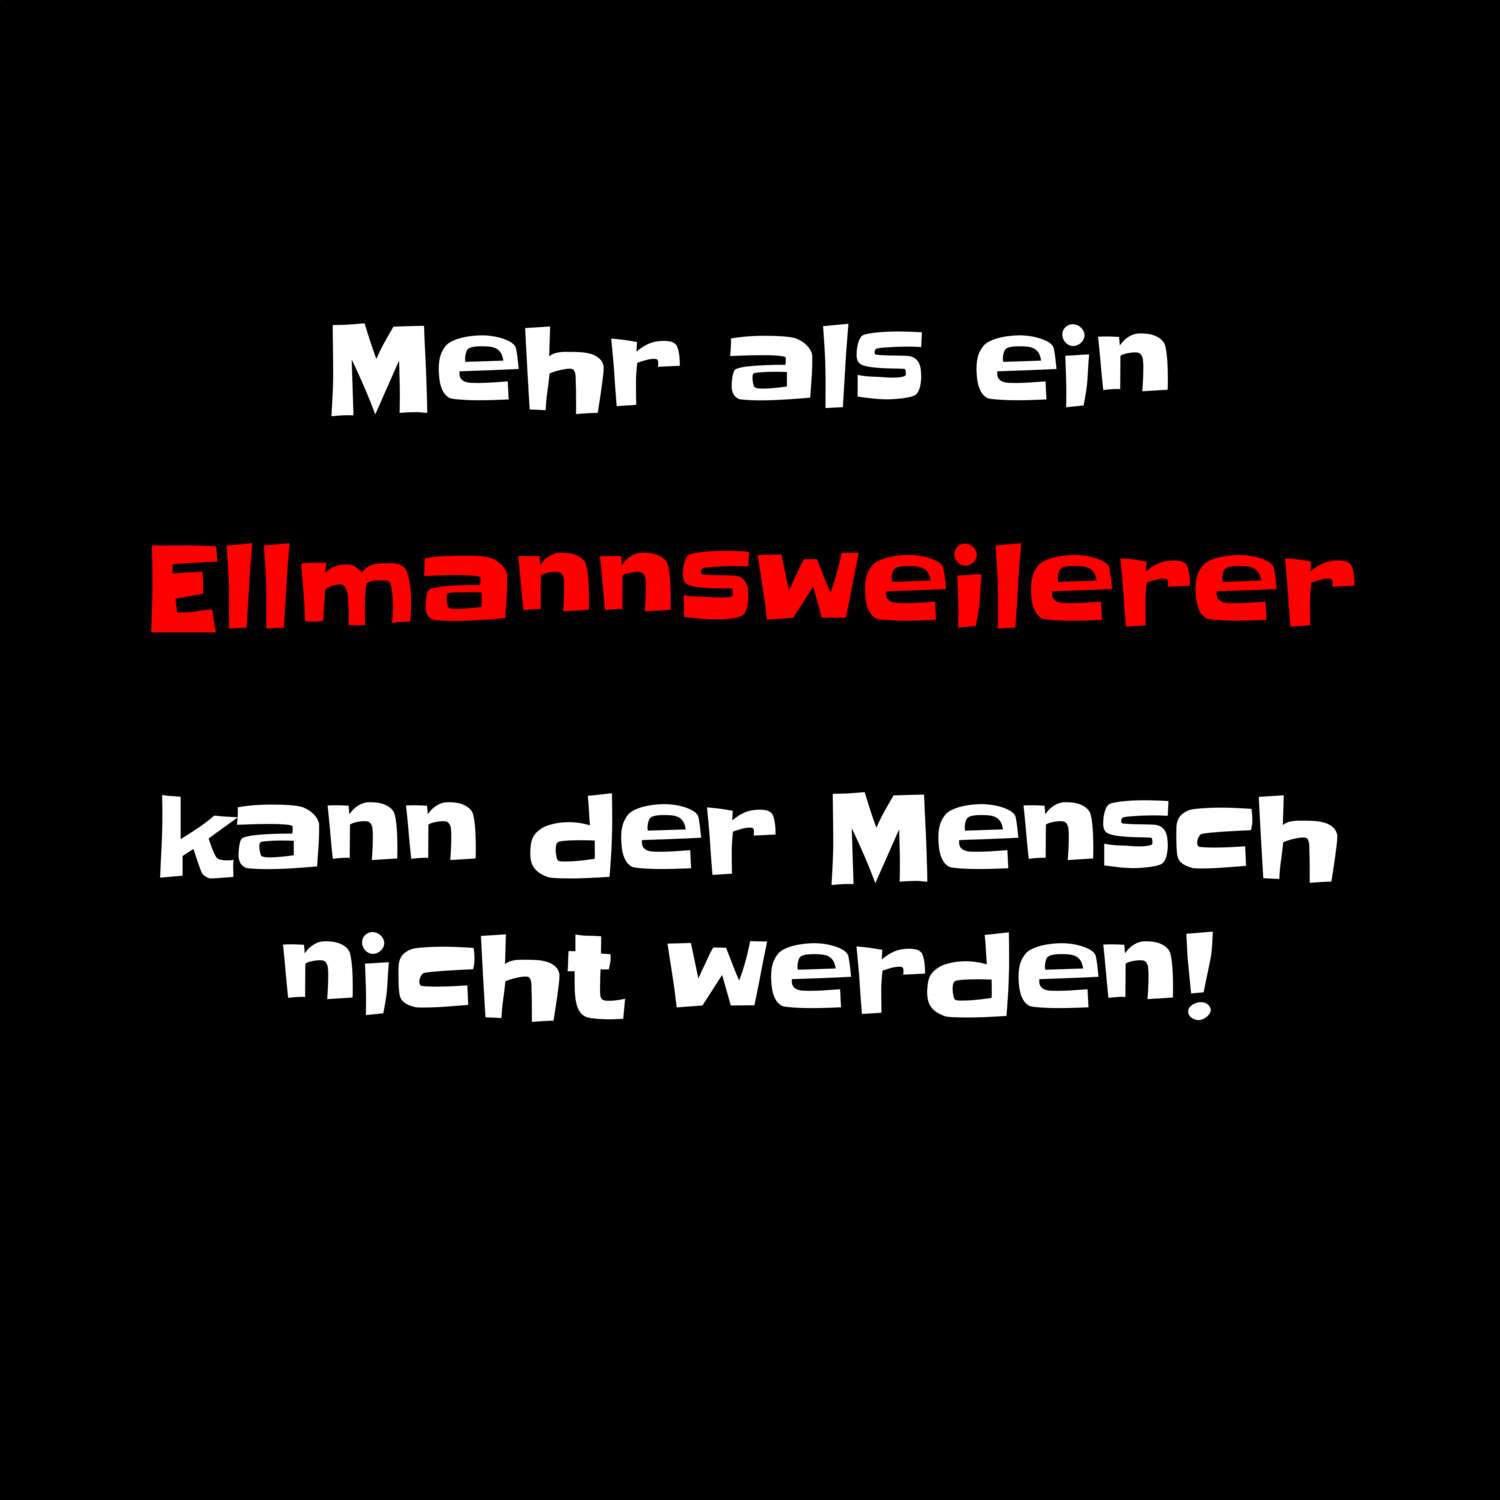 Ellmannsweiler T-Shirt »Mehr als ein«